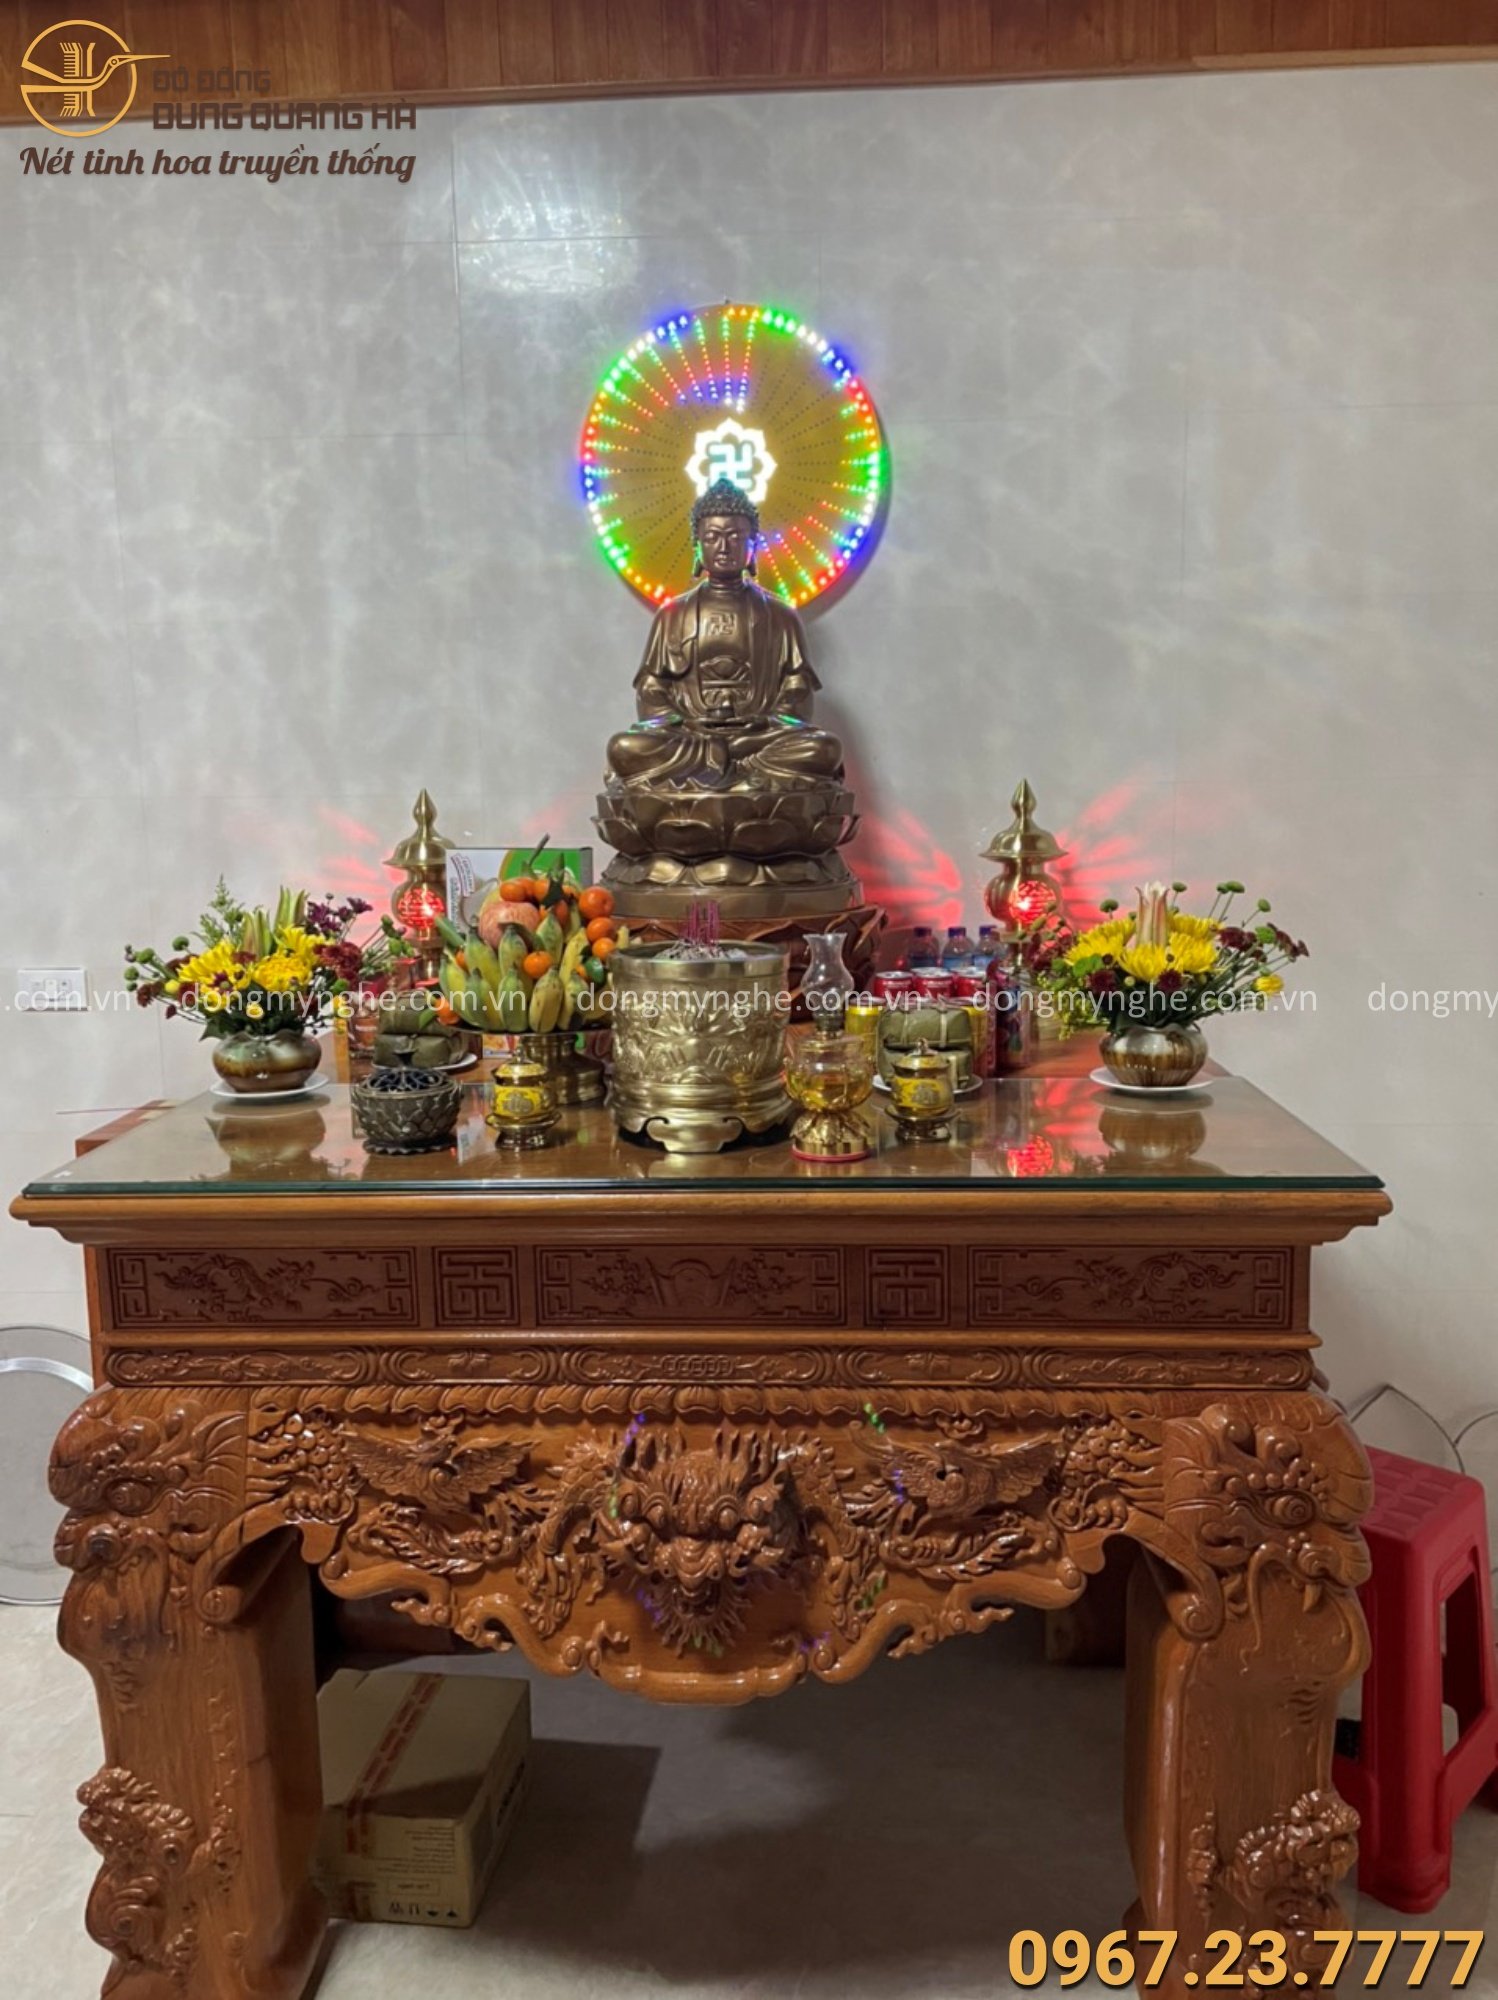 Tượng Phật dược sư là một biểu tượng quan trọng trong đời sống tâm linh của người Việt Nam. Được tạo ra từ các nghệ nhân tài hoa của đất nước, những tượng Phật dược sư mang đến sự thanh tịnh, bình an và sự cứu khổ cho tất cả mọi người. Với những chi tiết tinh xảo và sự tôn kính thiêng liêng, tượng Phật dược sư là một vật phẩm đáng giá để sở hữu.